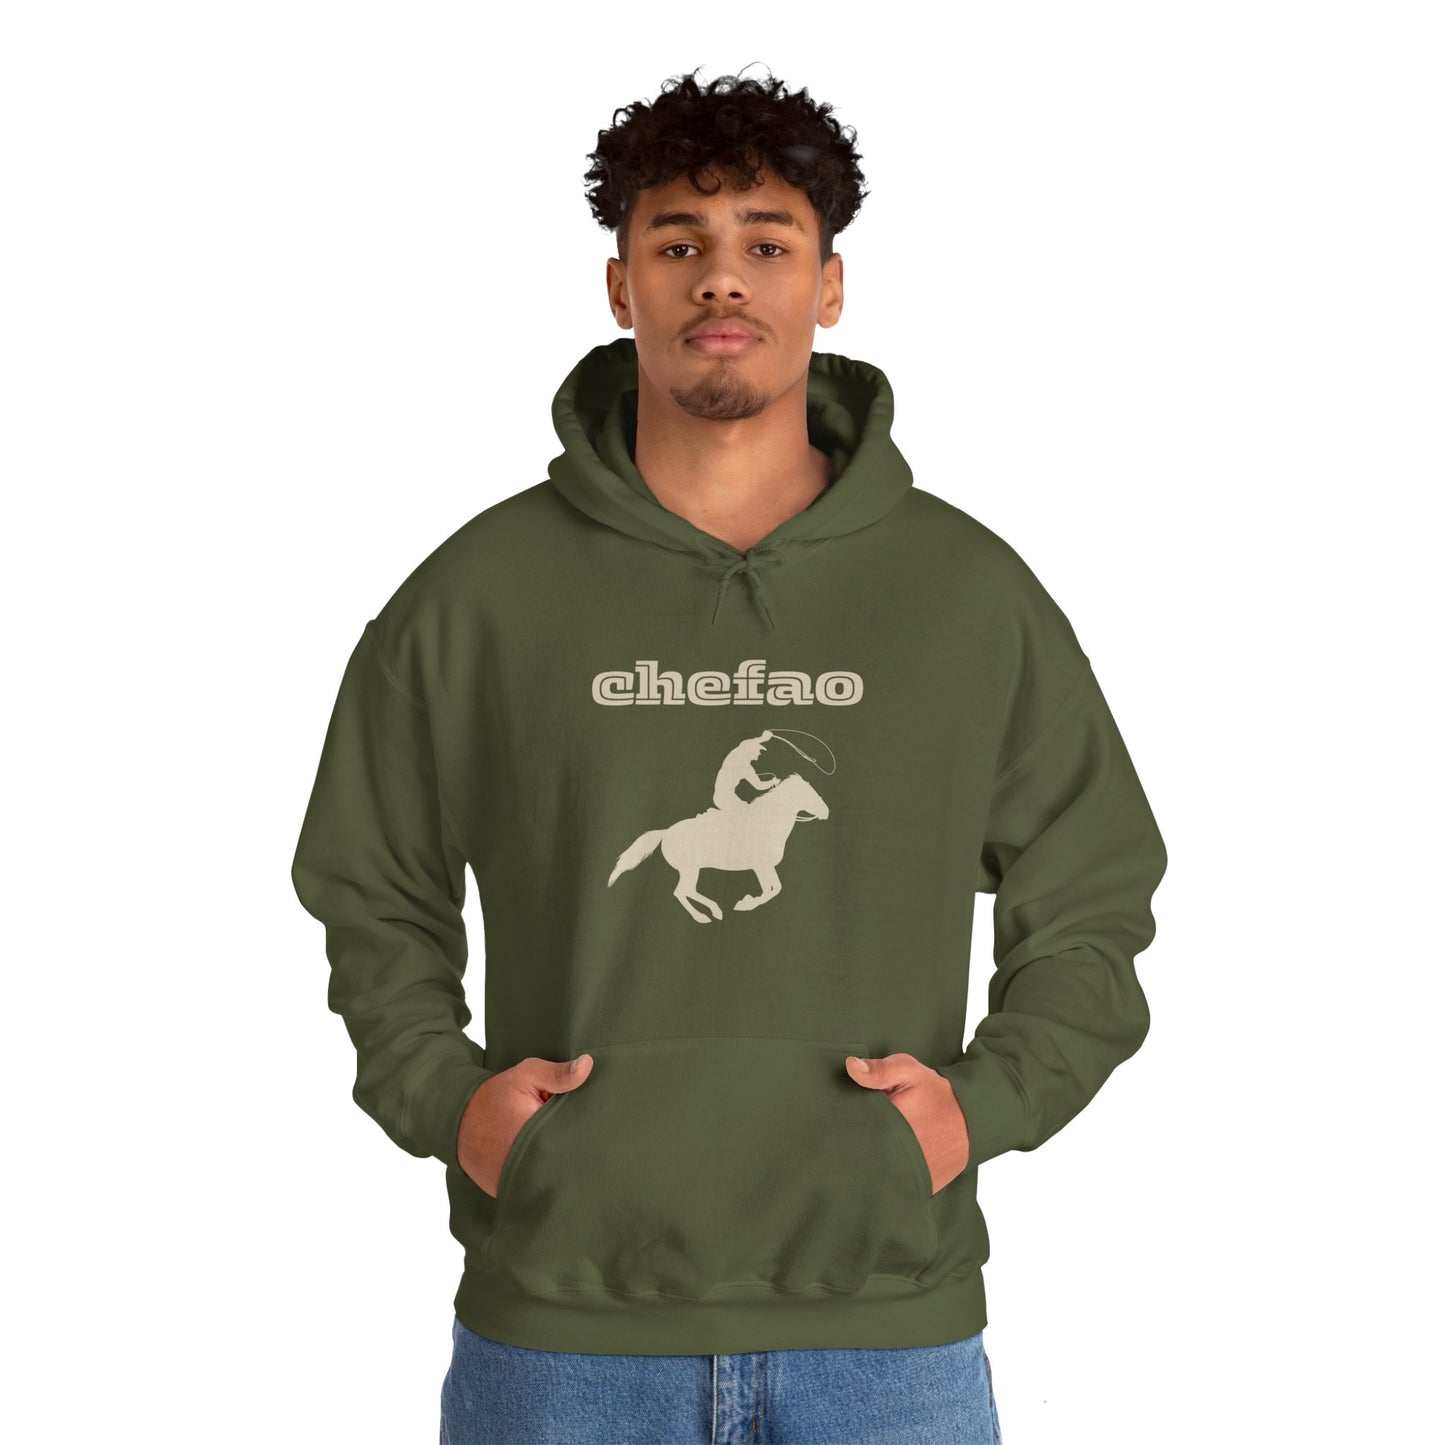 Chefao Cowboy III, Unisex Heavy Blend Hooded Sweatshirt